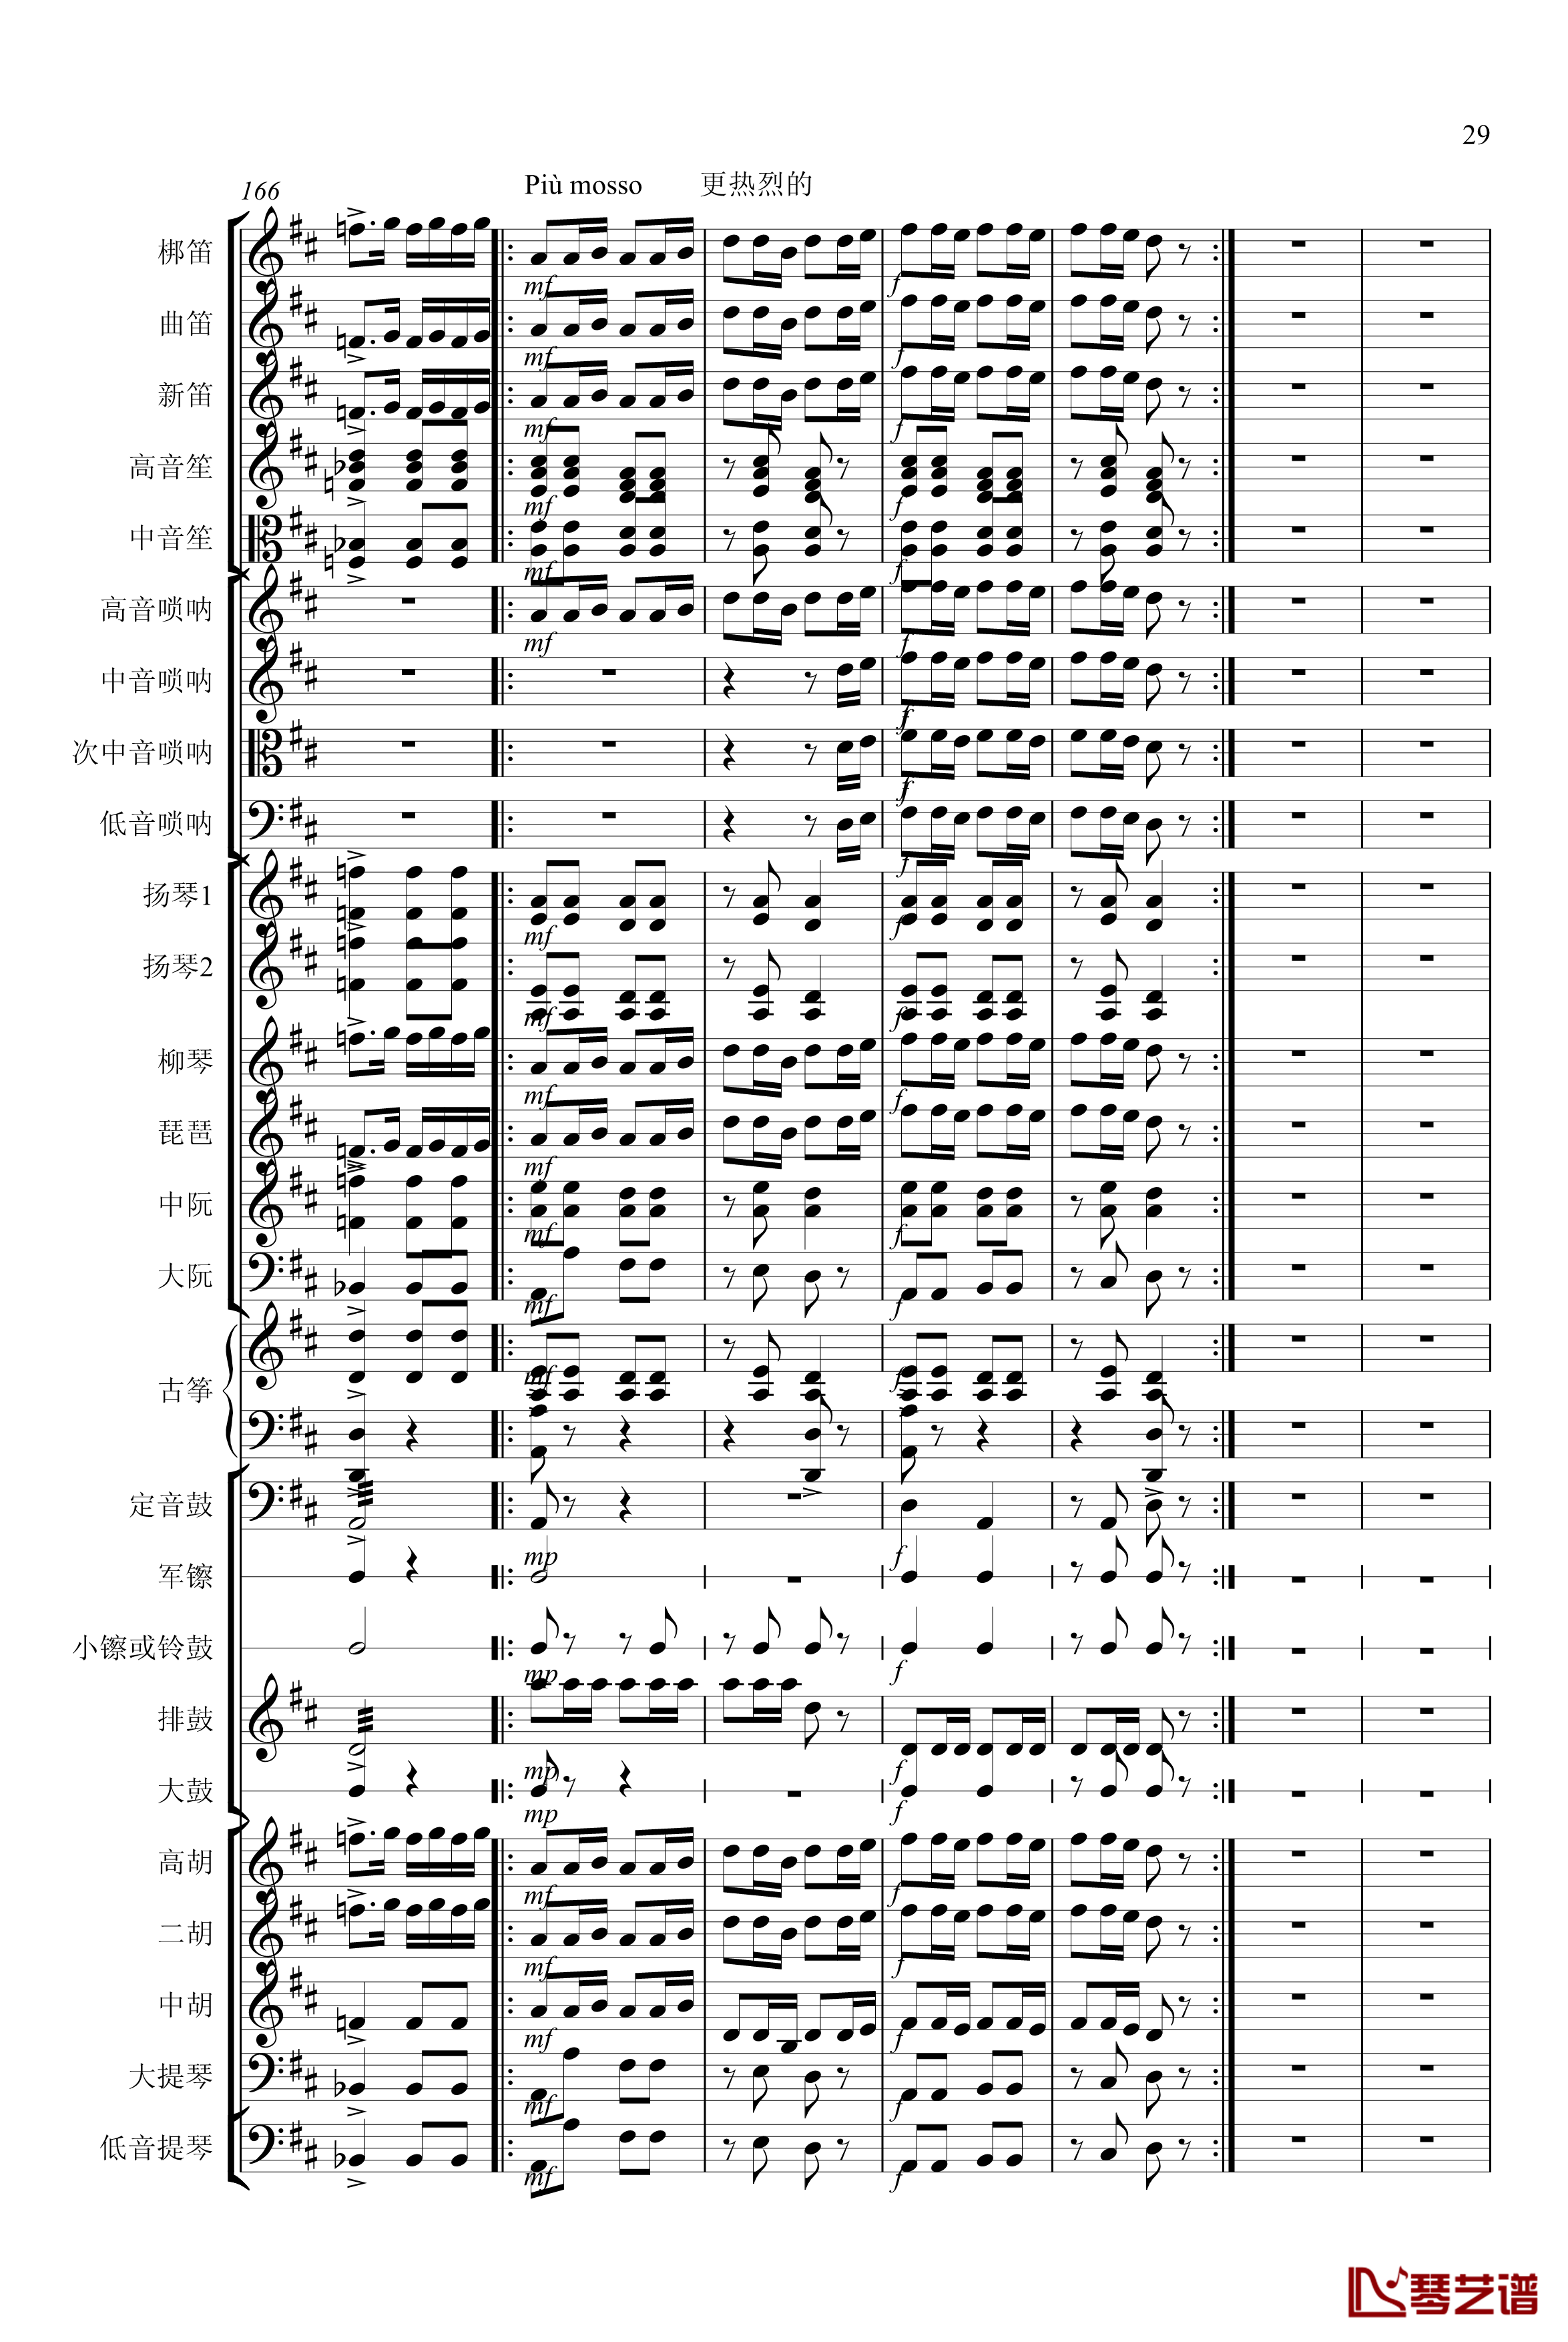 春节序曲钢琴谱-专业总谱-中国名曲29